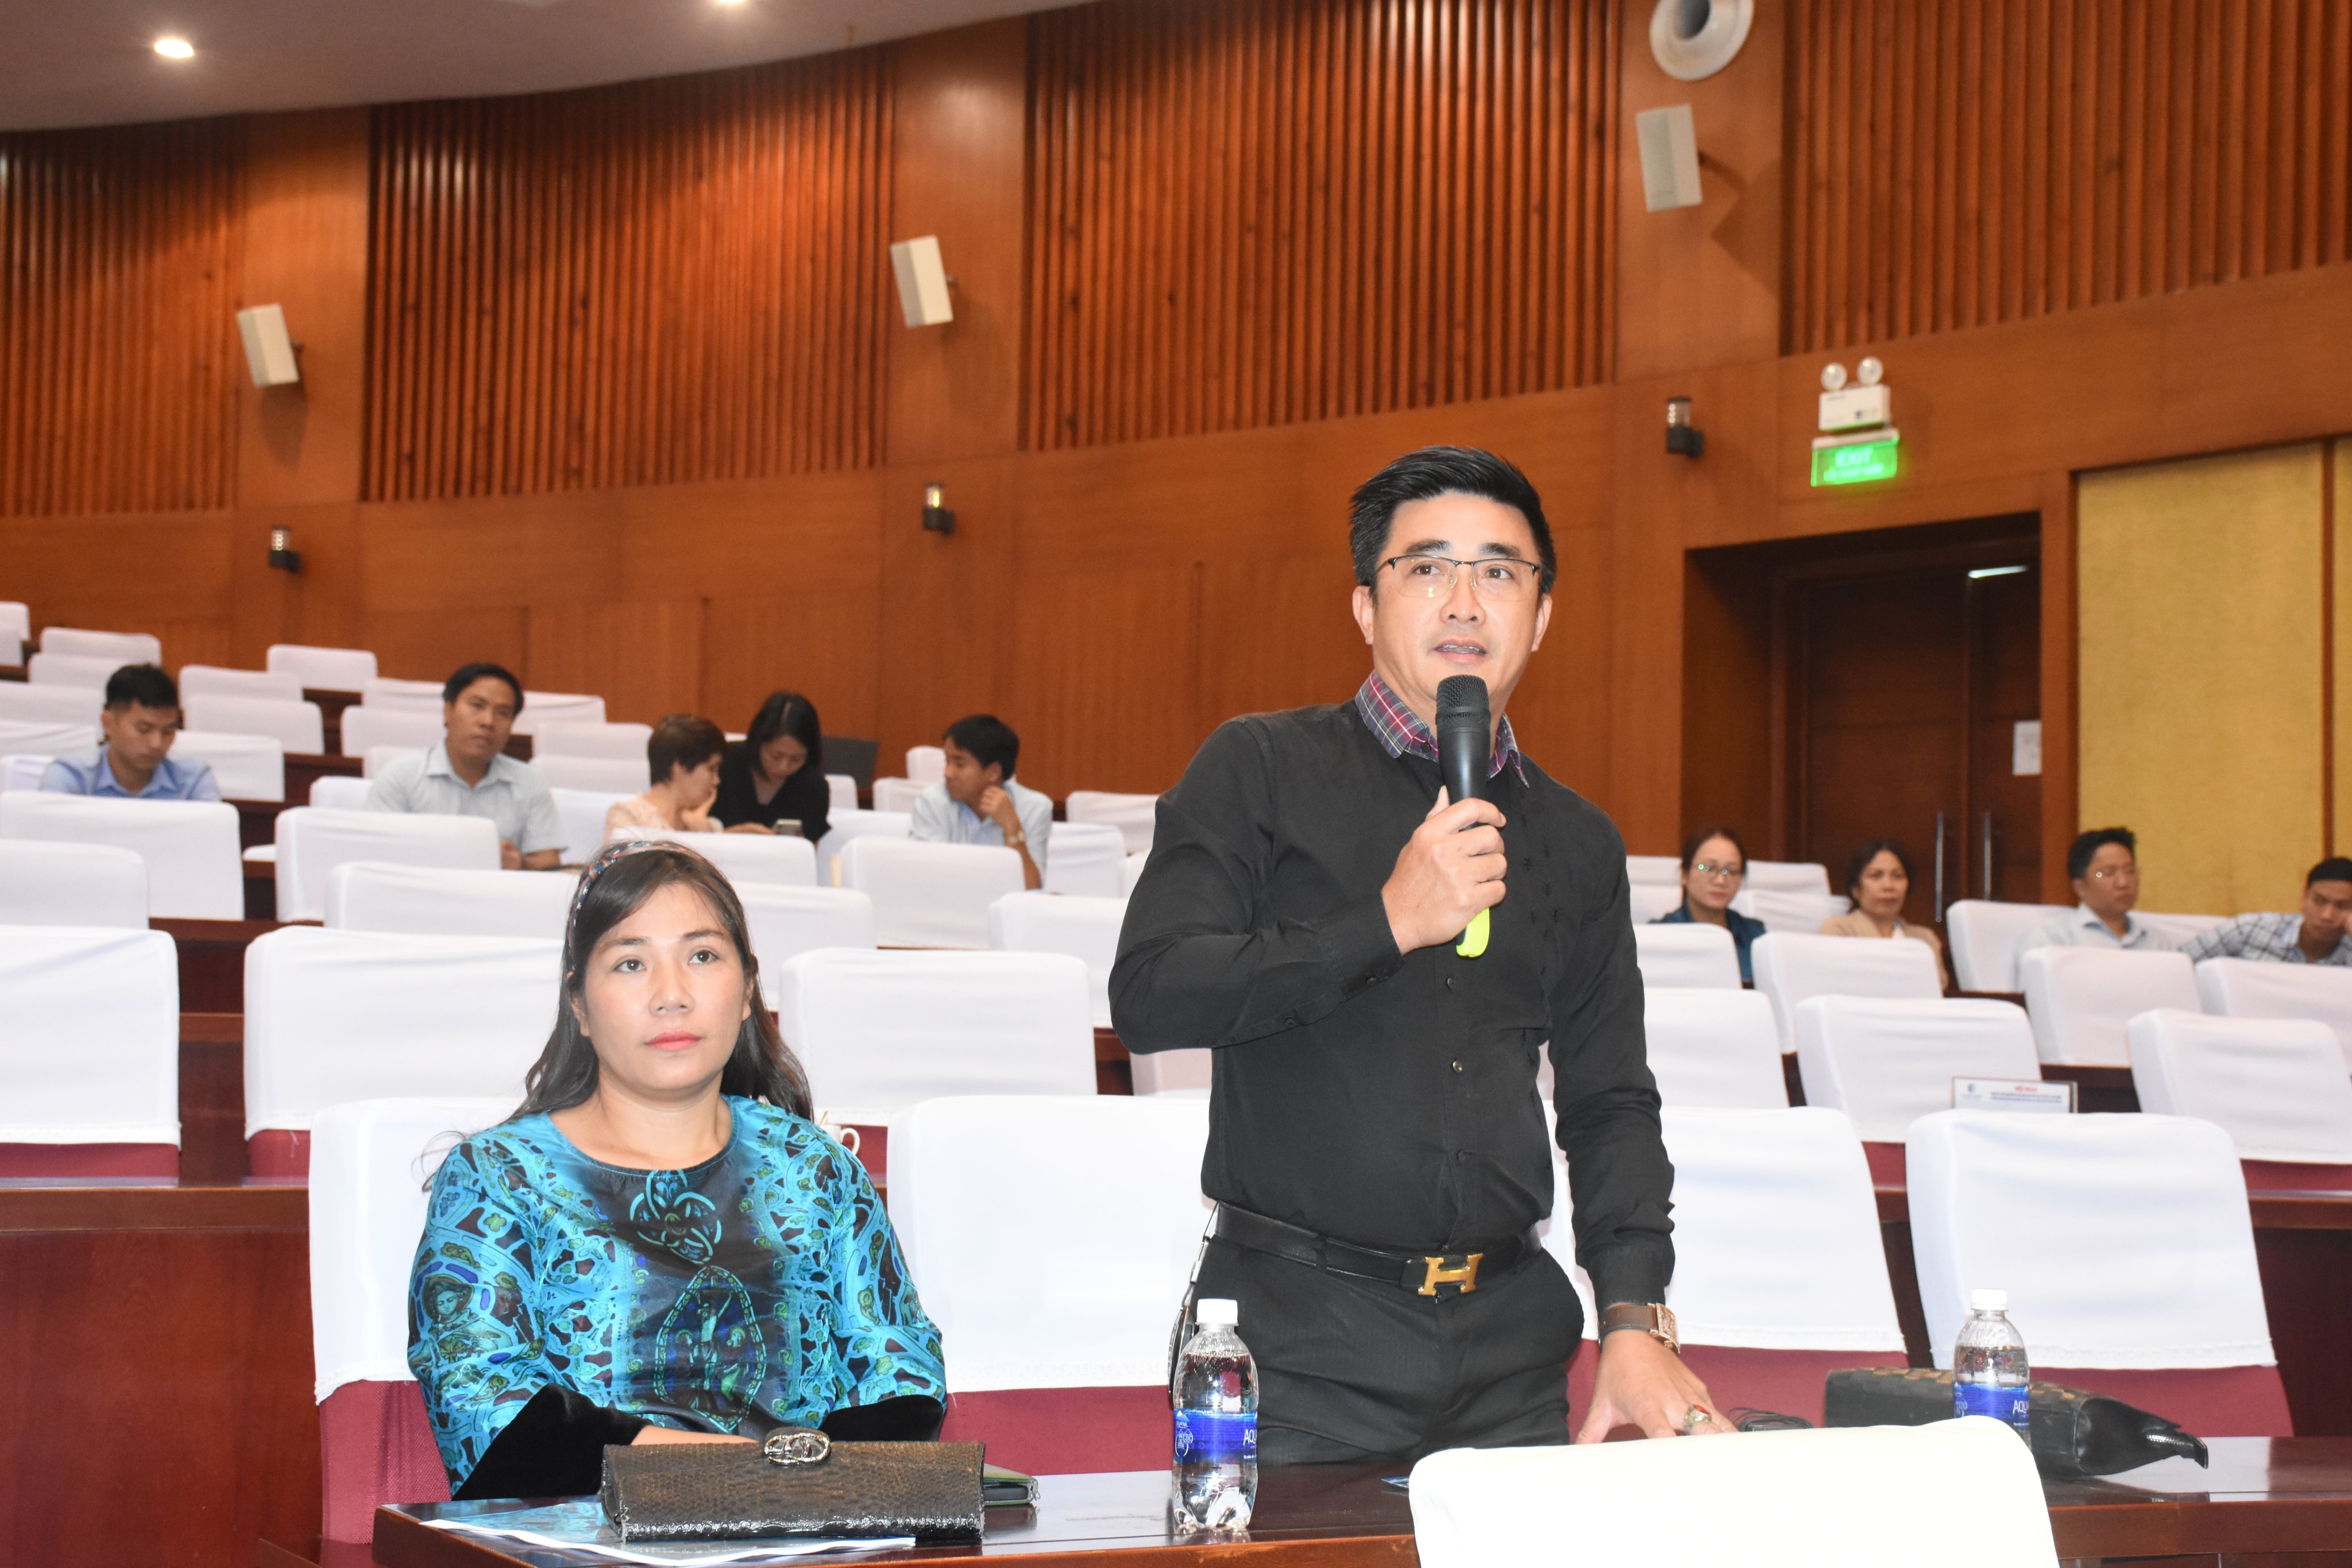 Ông Nguyễn Văn Trinh, Tổng Giám đốc Công ty CP Bất động sản Đại Phúc đặt câu hỏi liên quan đến thời gian sử dụng của condotel.